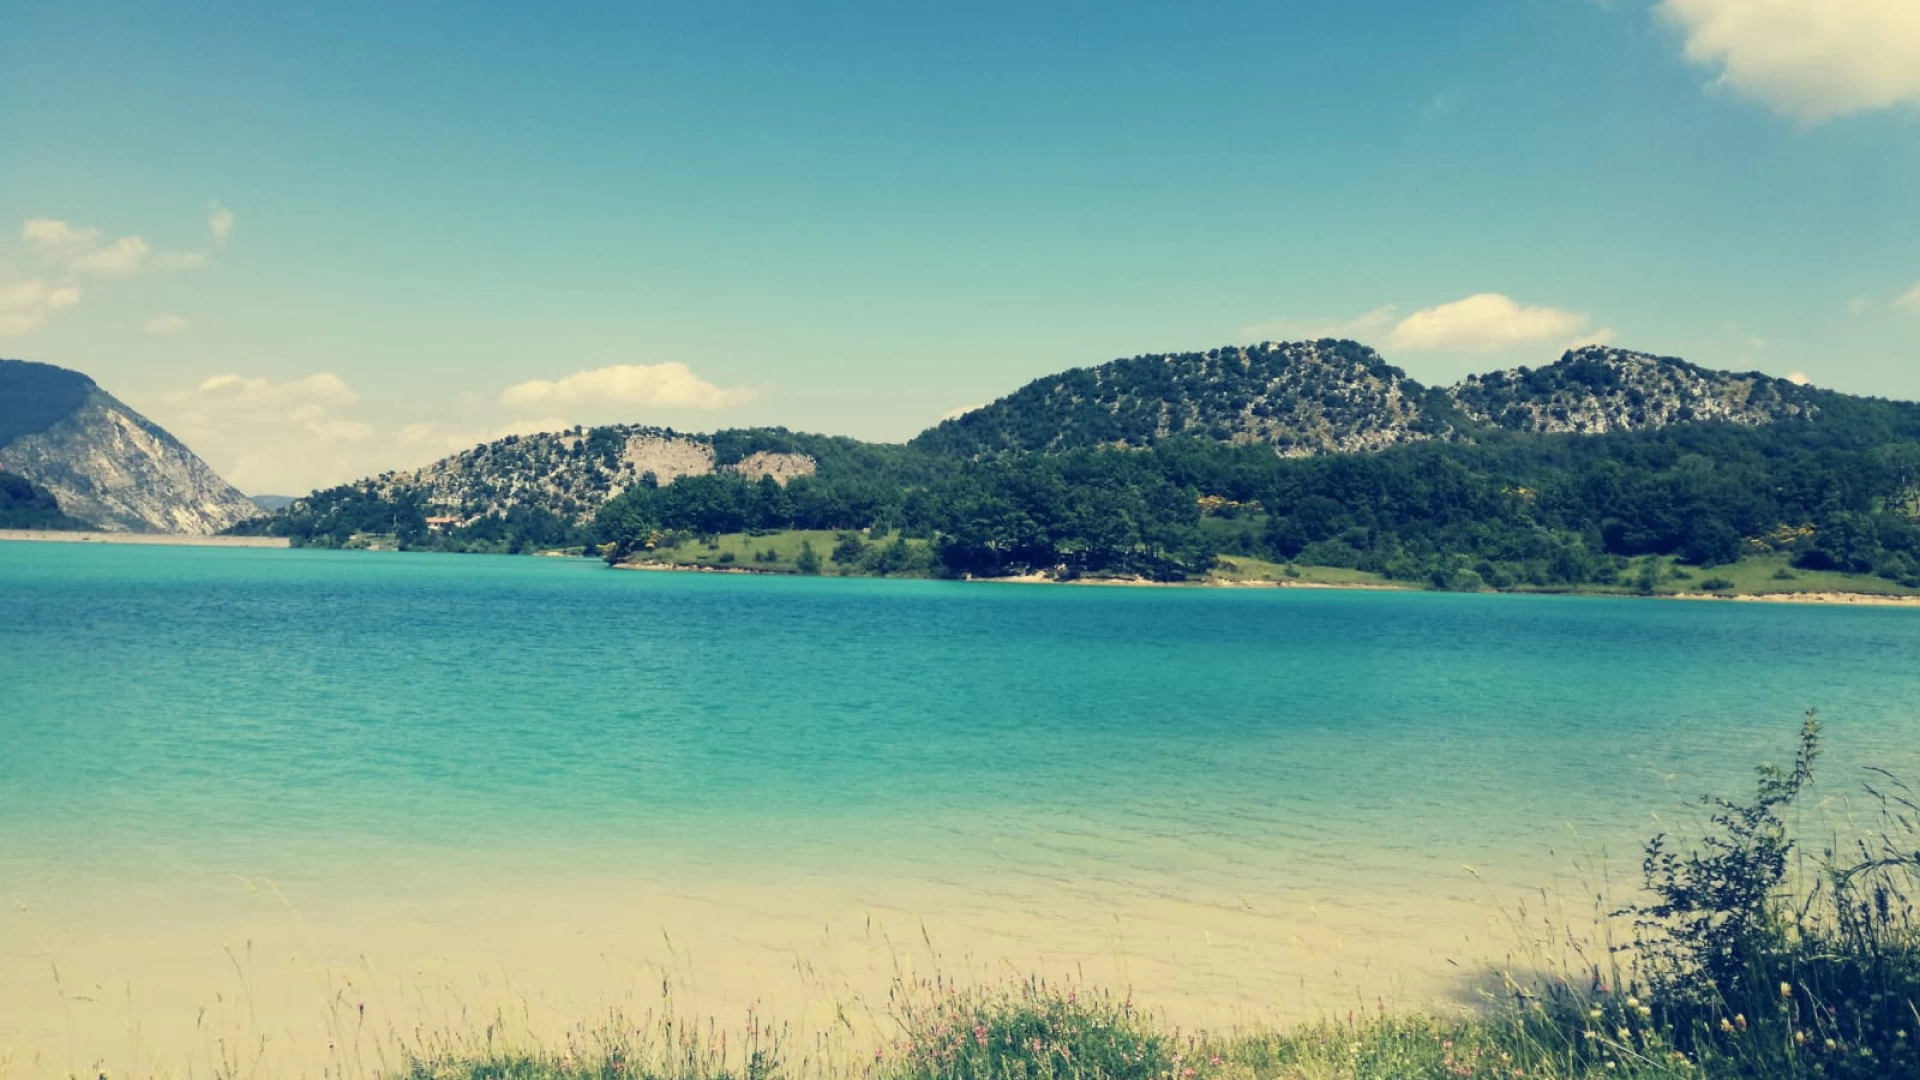 Il lago di Castel San Vincenzo al 3° posto tra i laghi più belli d’Italia. La classifica redatta on-line dalla rivista specializzata “Non solo nautica”.